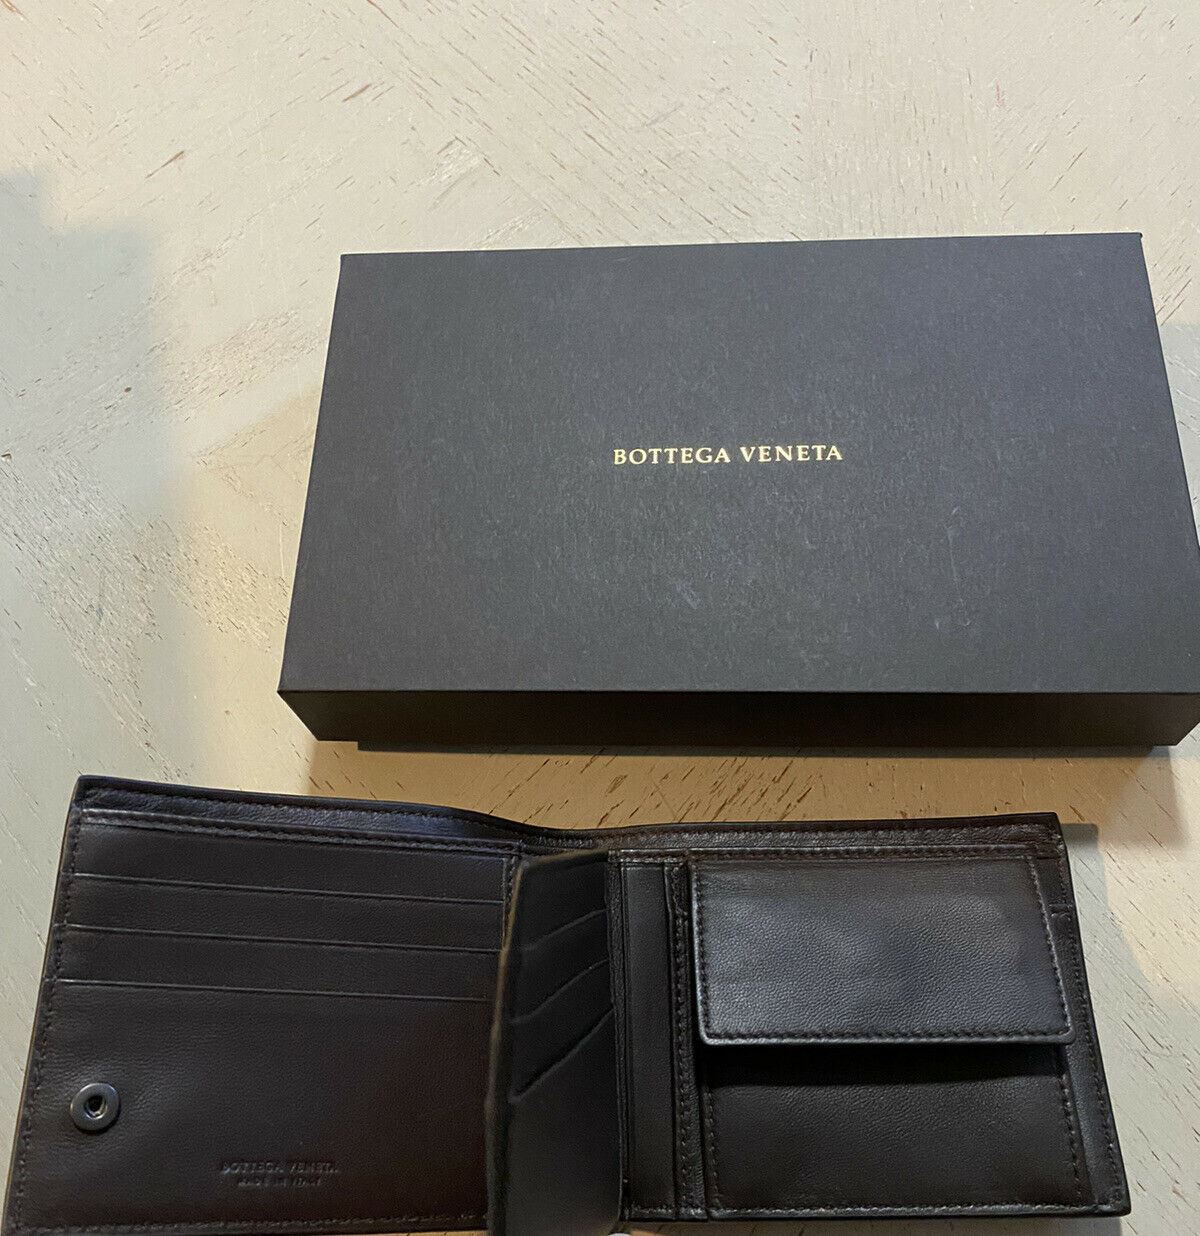 Новый мужской кошелек Bottega Veneta темно-коричневого цвета за 825 долларов 522272 V001N Италия